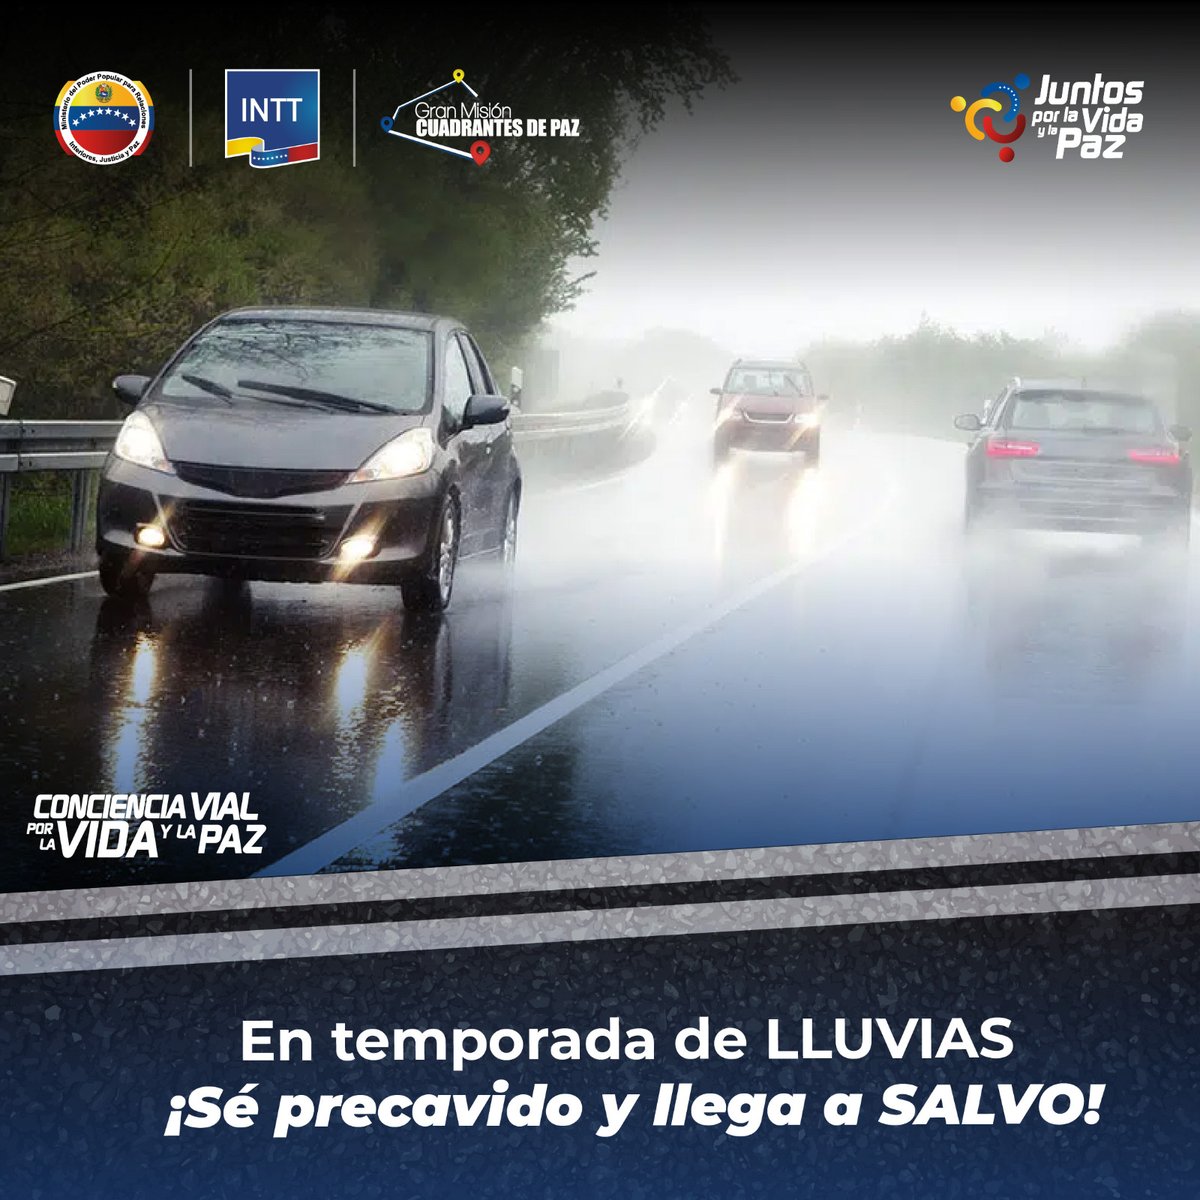 #SabíasQue | La distancia de frenado en un carro aumenta hasta un 40% en carretera mojada.
#AvanzandoConAmor